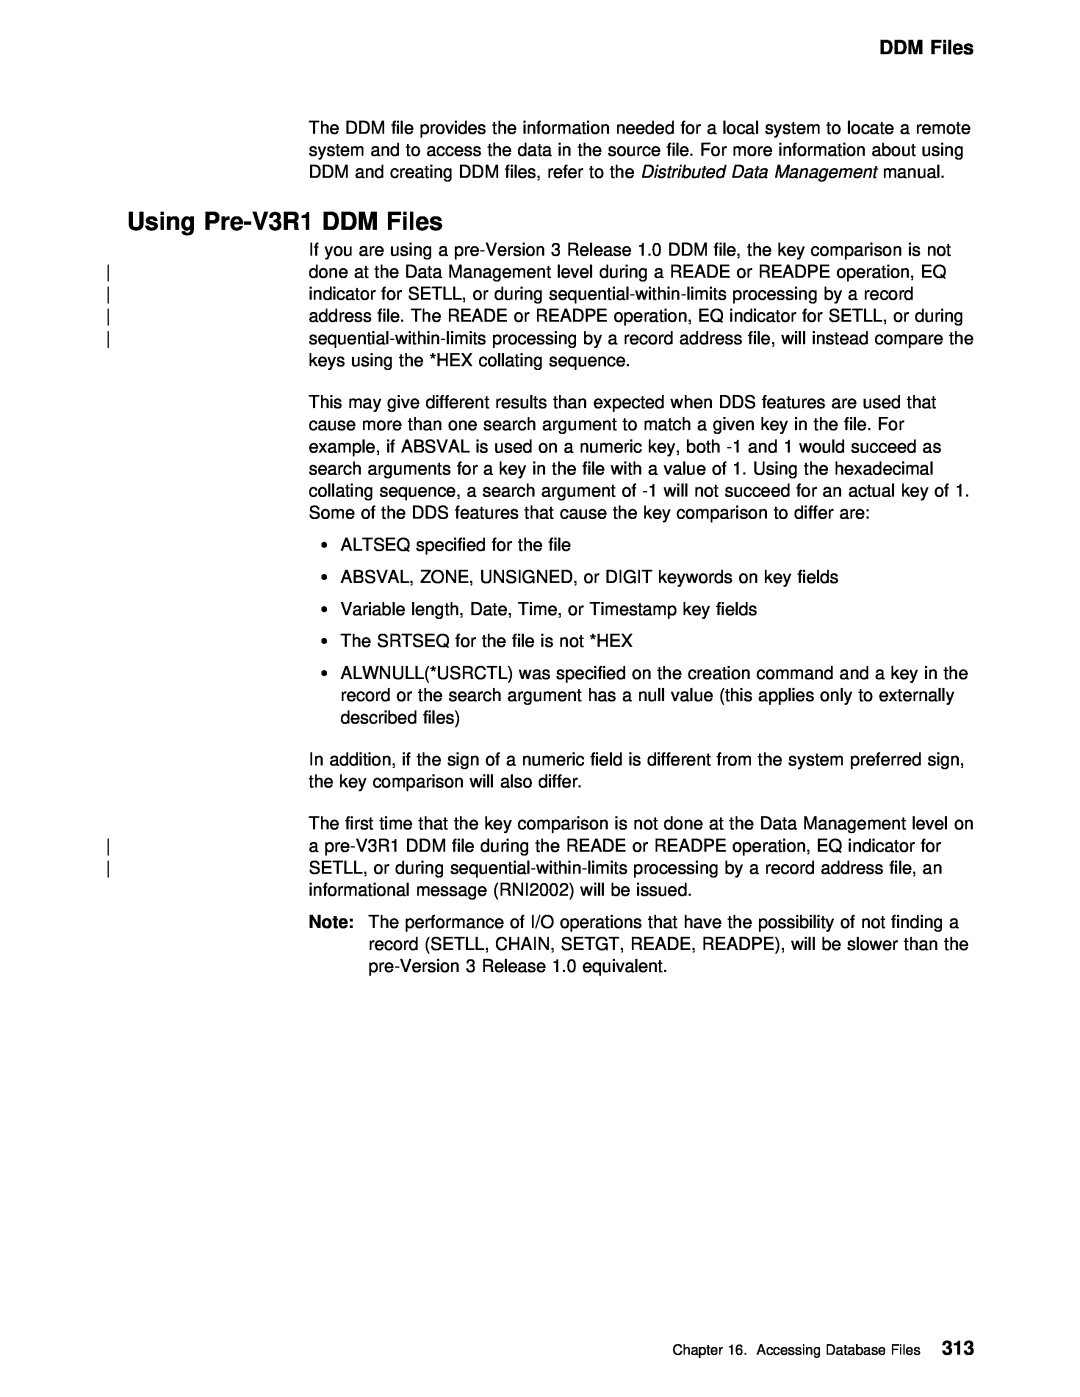 IBM AS/400 manual Using, Pre-V3R1 DDM 